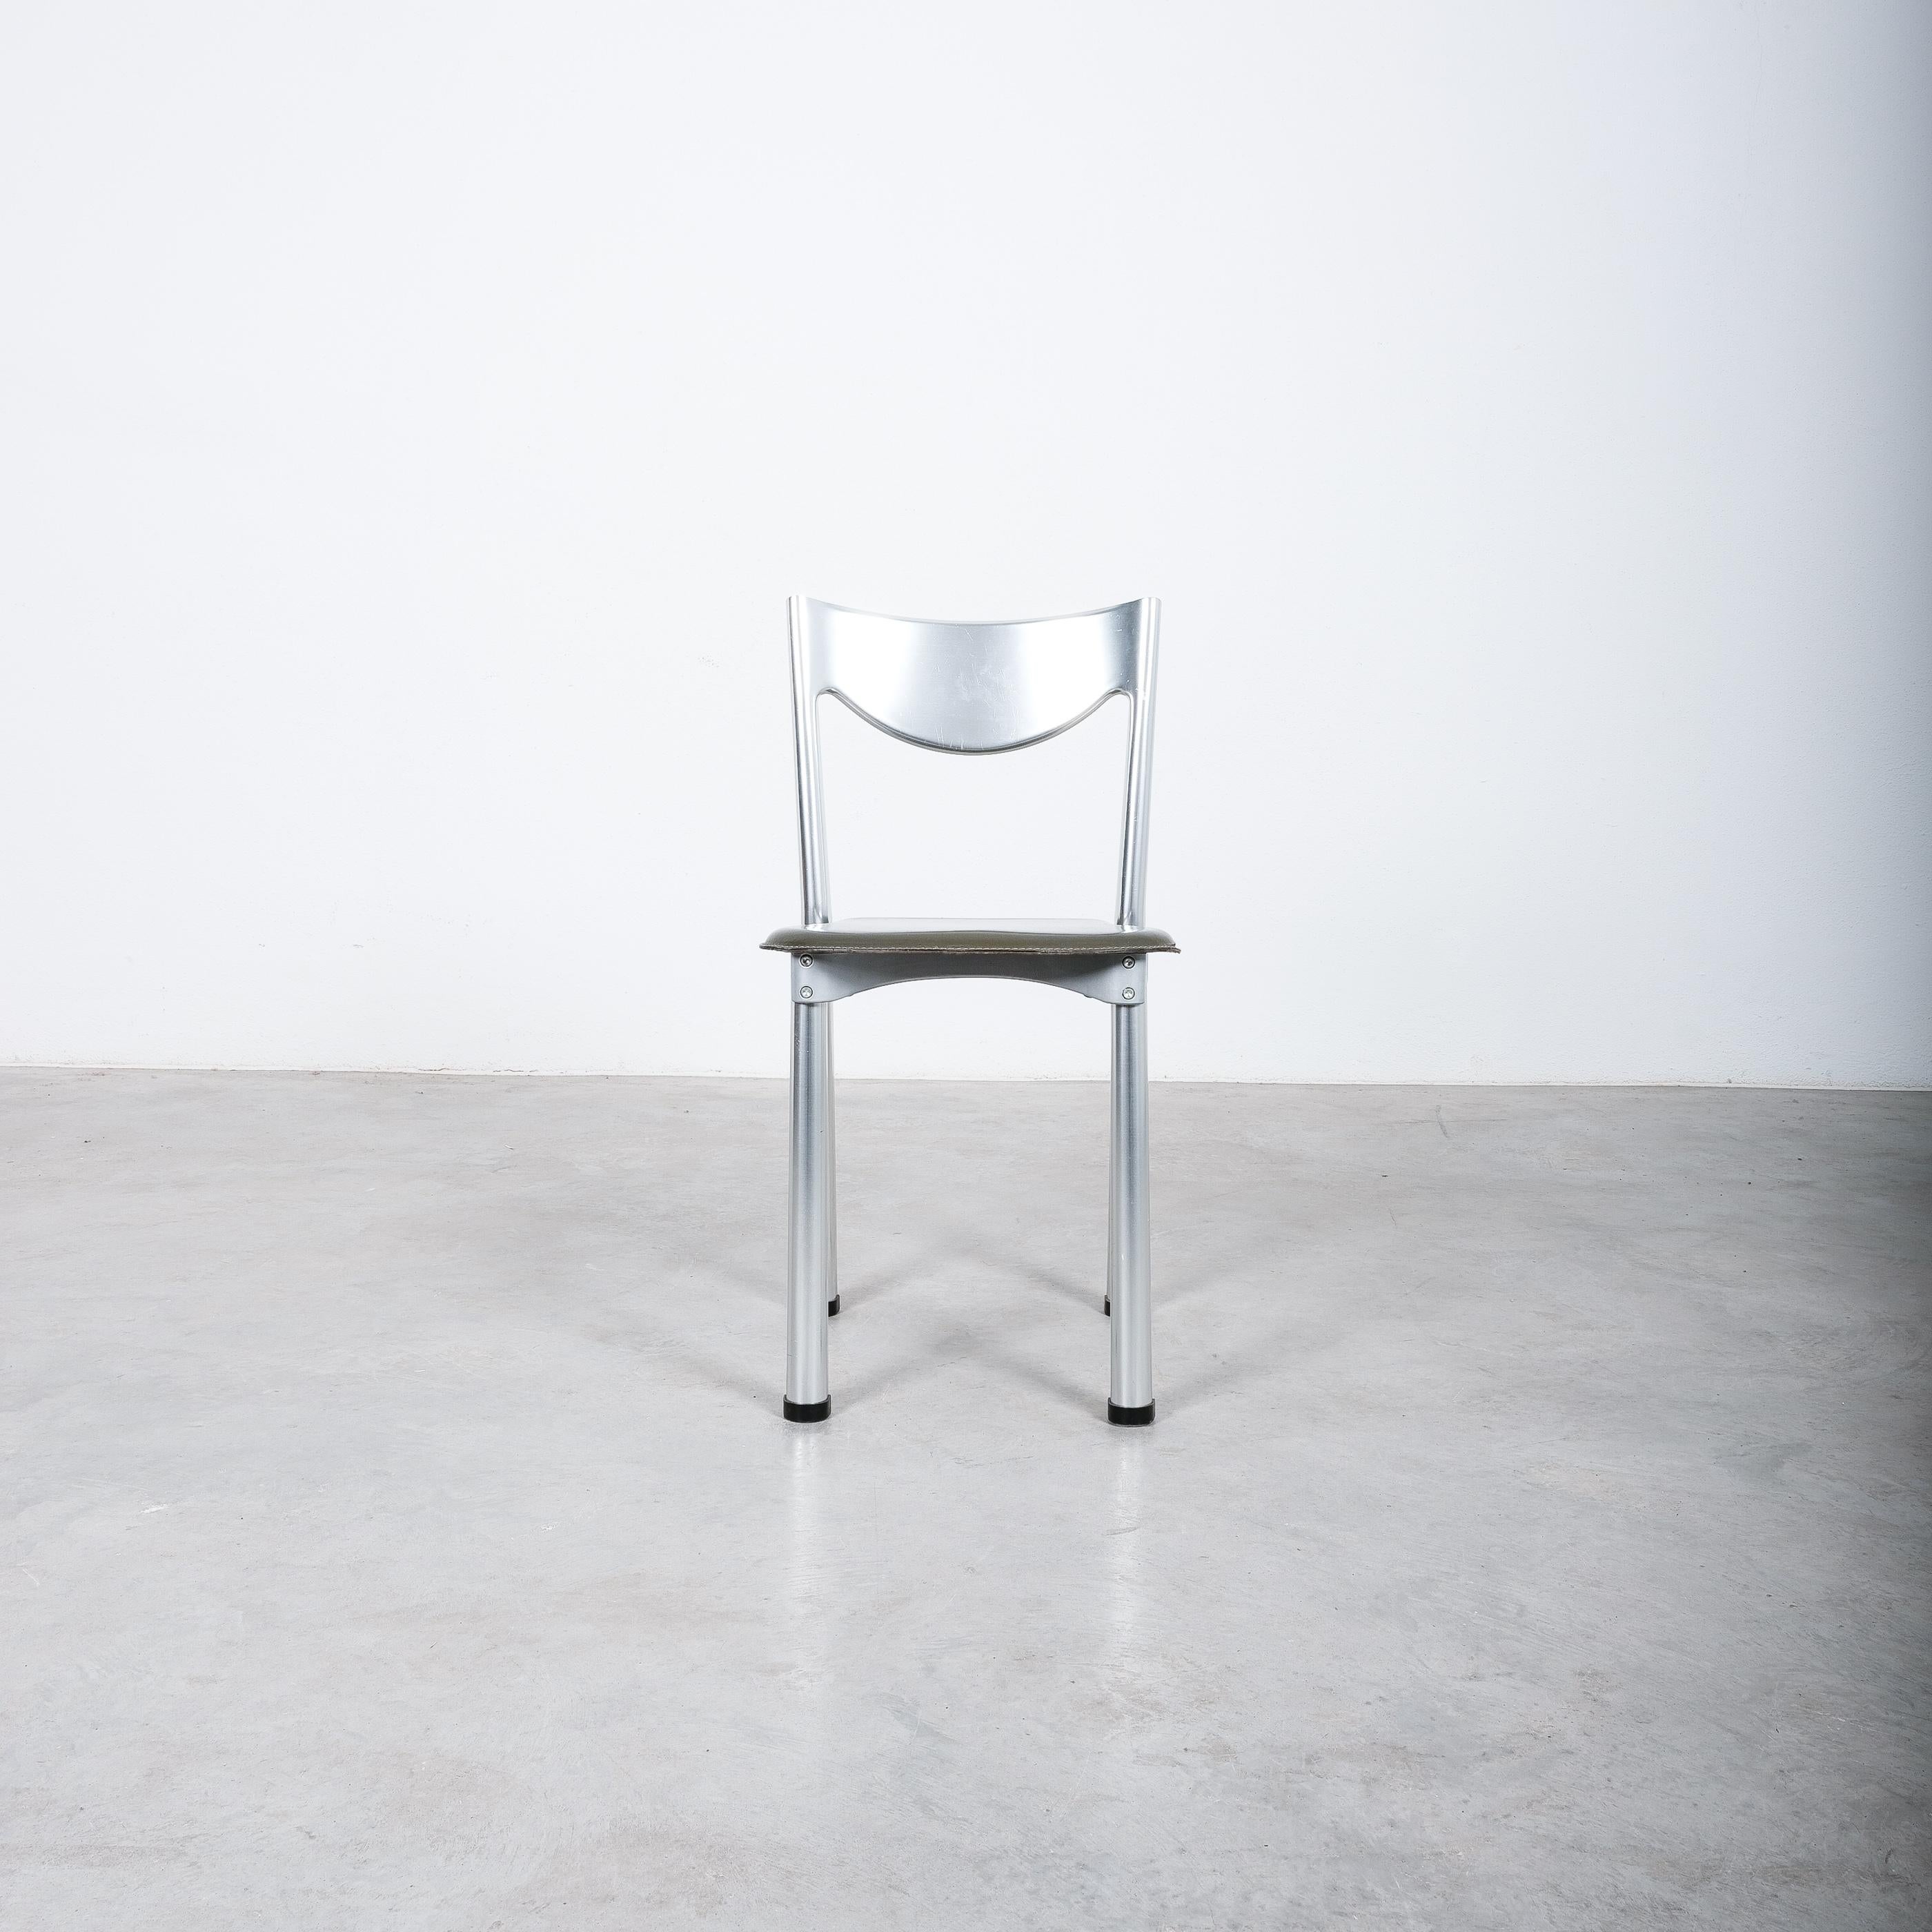 Seltener Satz von 4 Stühlen von Antonello Mosca für Ycami Collection, um 1980

Verkauft als einzelne Stücke

Seltene Stühle aus Aluminium und Leder von Antonello Mosca. Postmoderne Stühle mit tragendem Gestell aus kaltgepresstem Aluminium. Klassiker